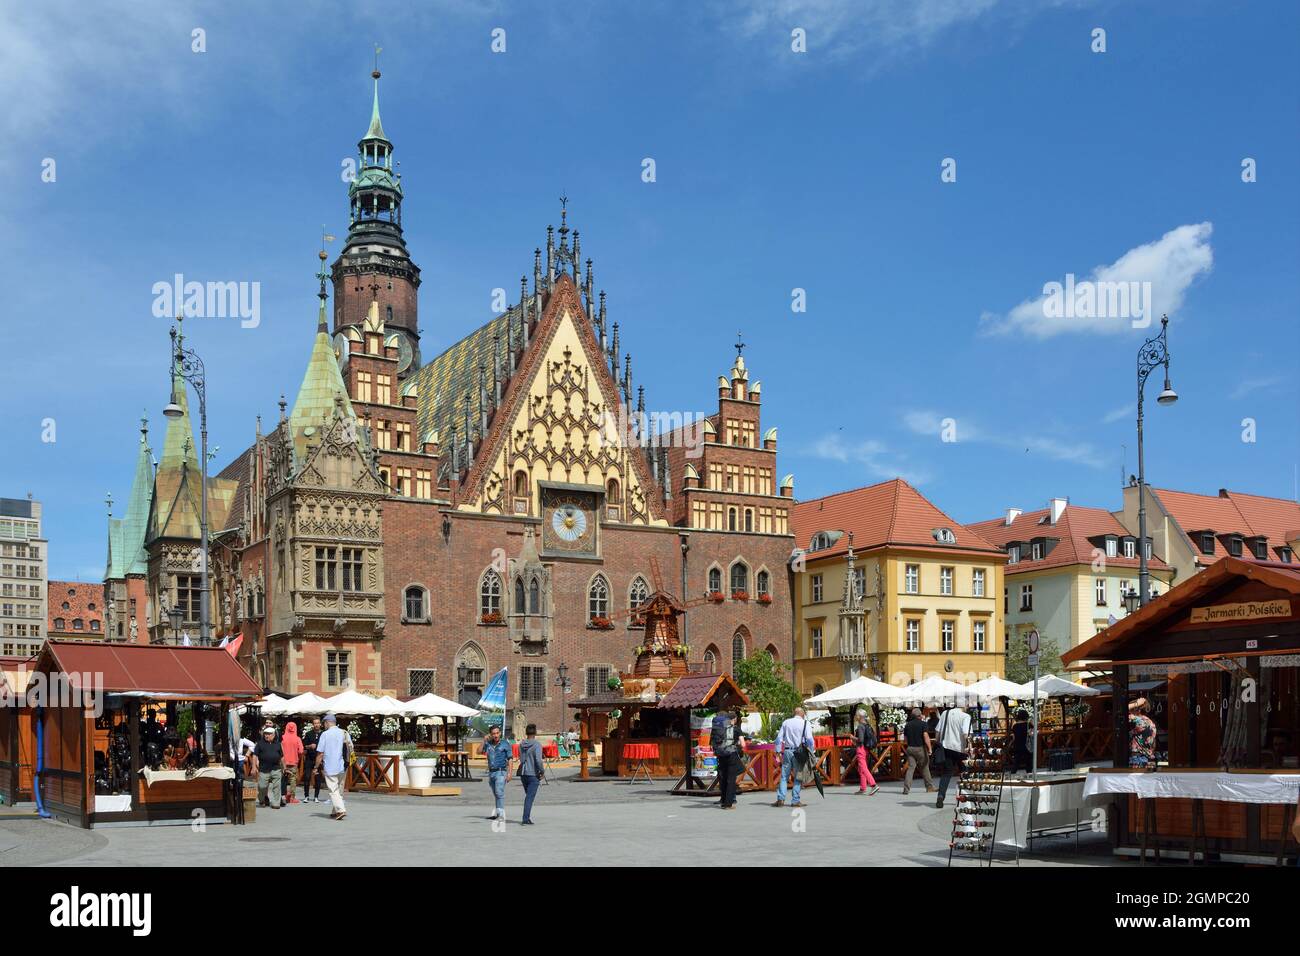 Breslau, Niederschlesien, Polen - 16. Juni 2016: Menschen aus dem Alten Rathaus auf dem Marktplatz in der Altstadt von Breslau - Polen. Stockfoto